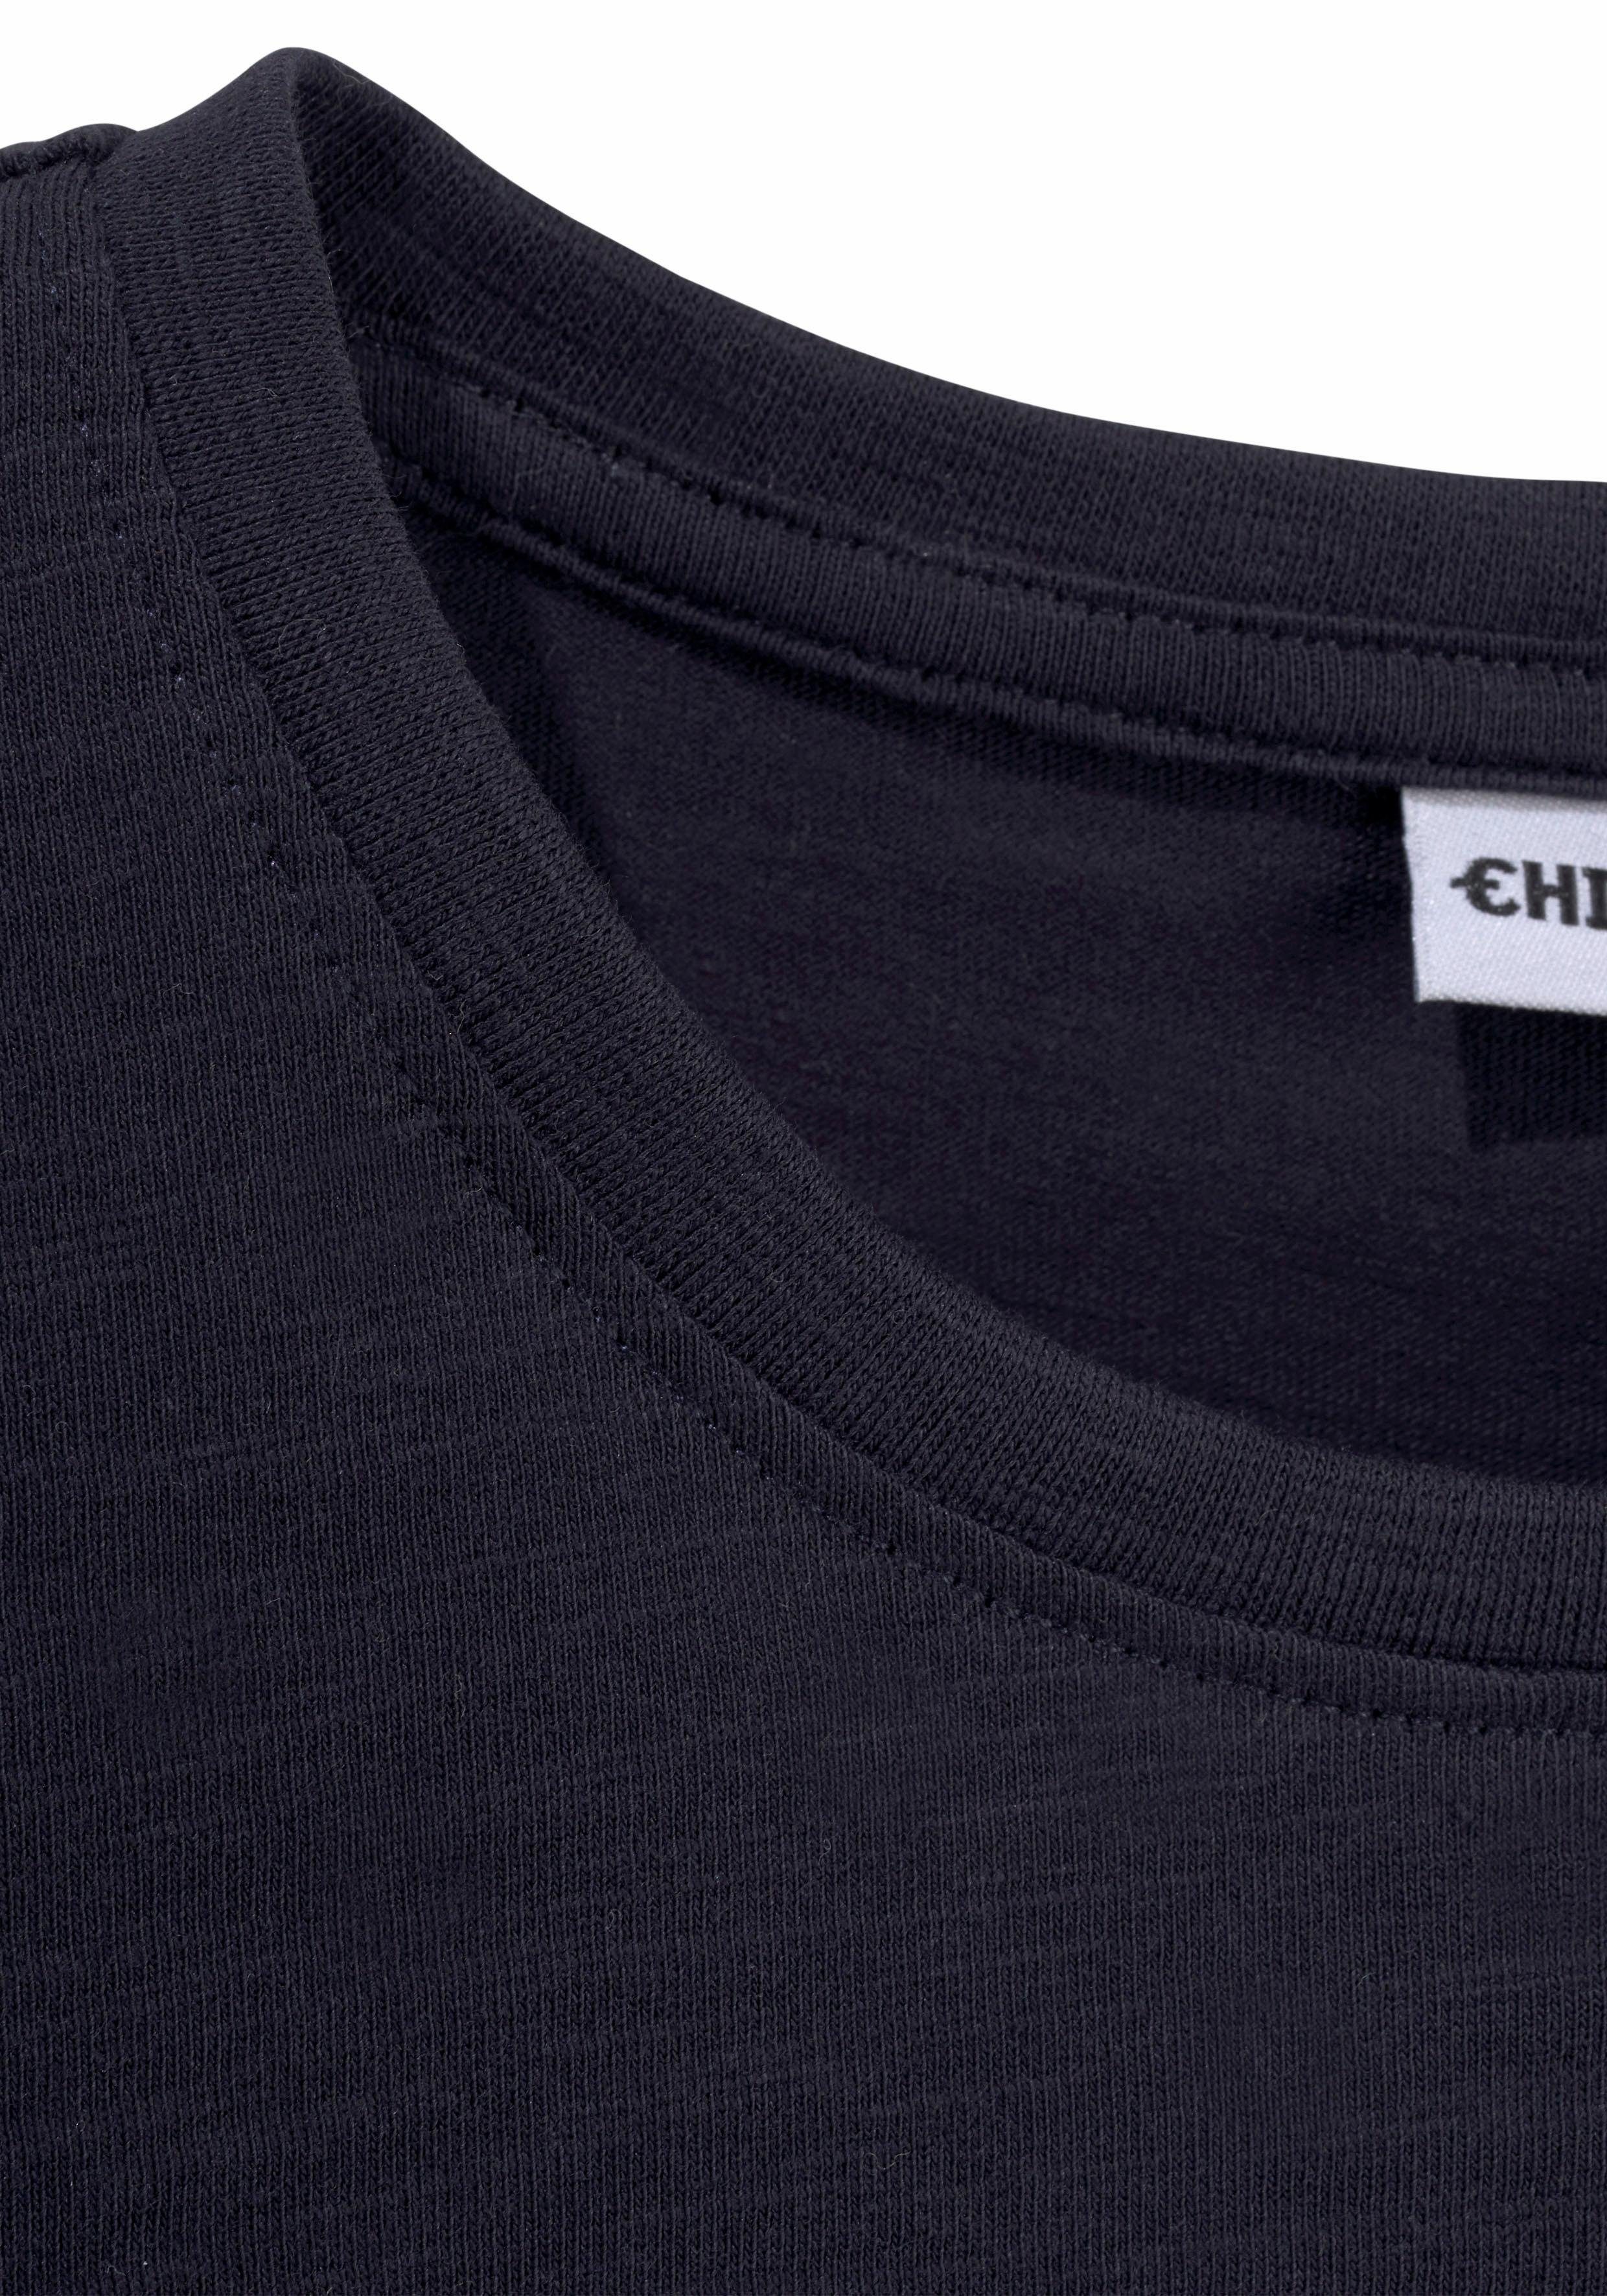 T-Shirt vorn Logodruck mit Chiemsee BASIC